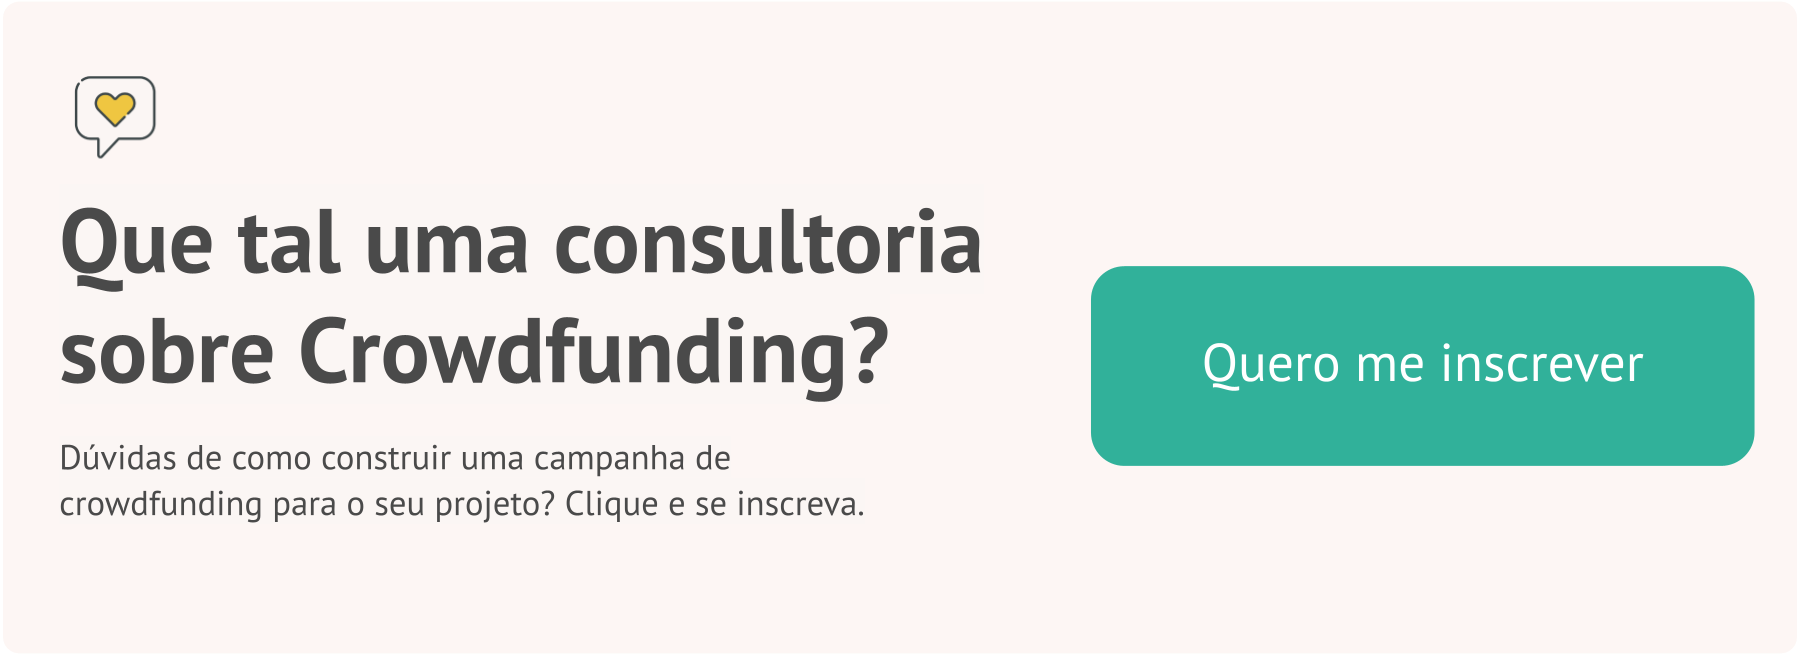 Banner com a pergunta "que tal uma consultoria sobre crowdfunding?" em destaque. E com um botão verde escrito "quero me inscrever"